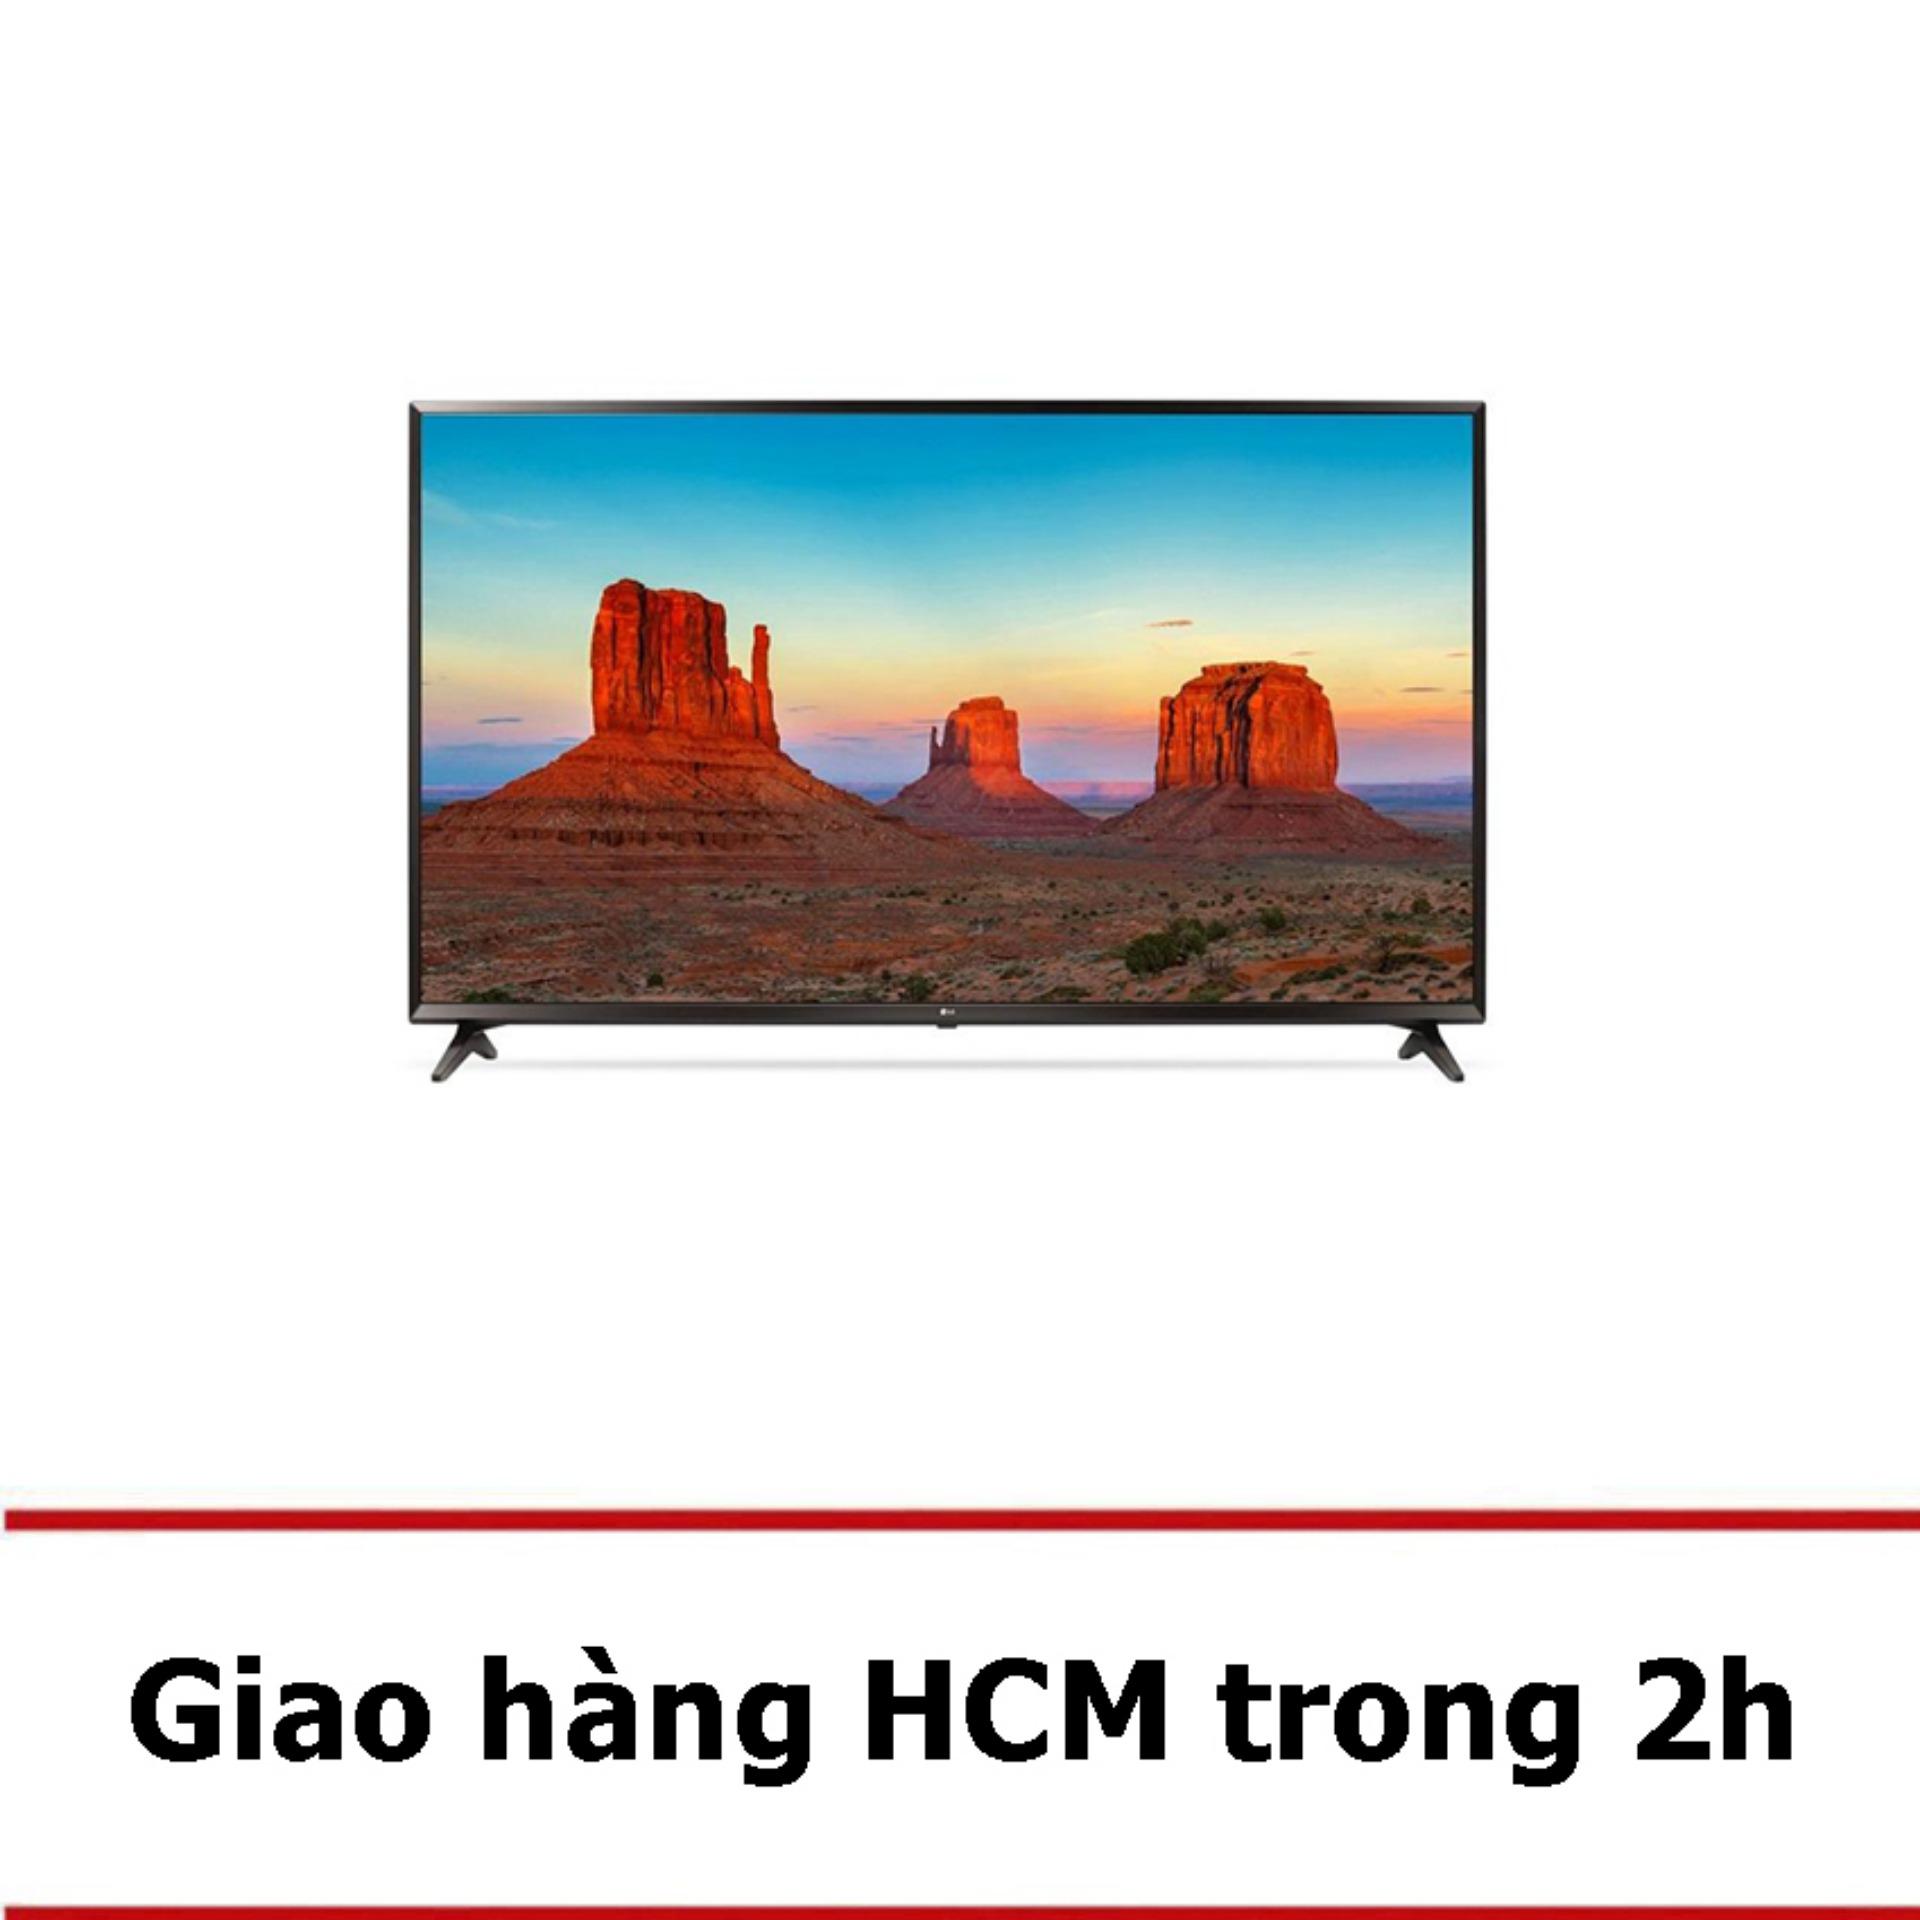 Smart TV LG 55inch 4K Ultra HD - Model 55UK6100PTA (Đen) - Hãng phân phối chính thức